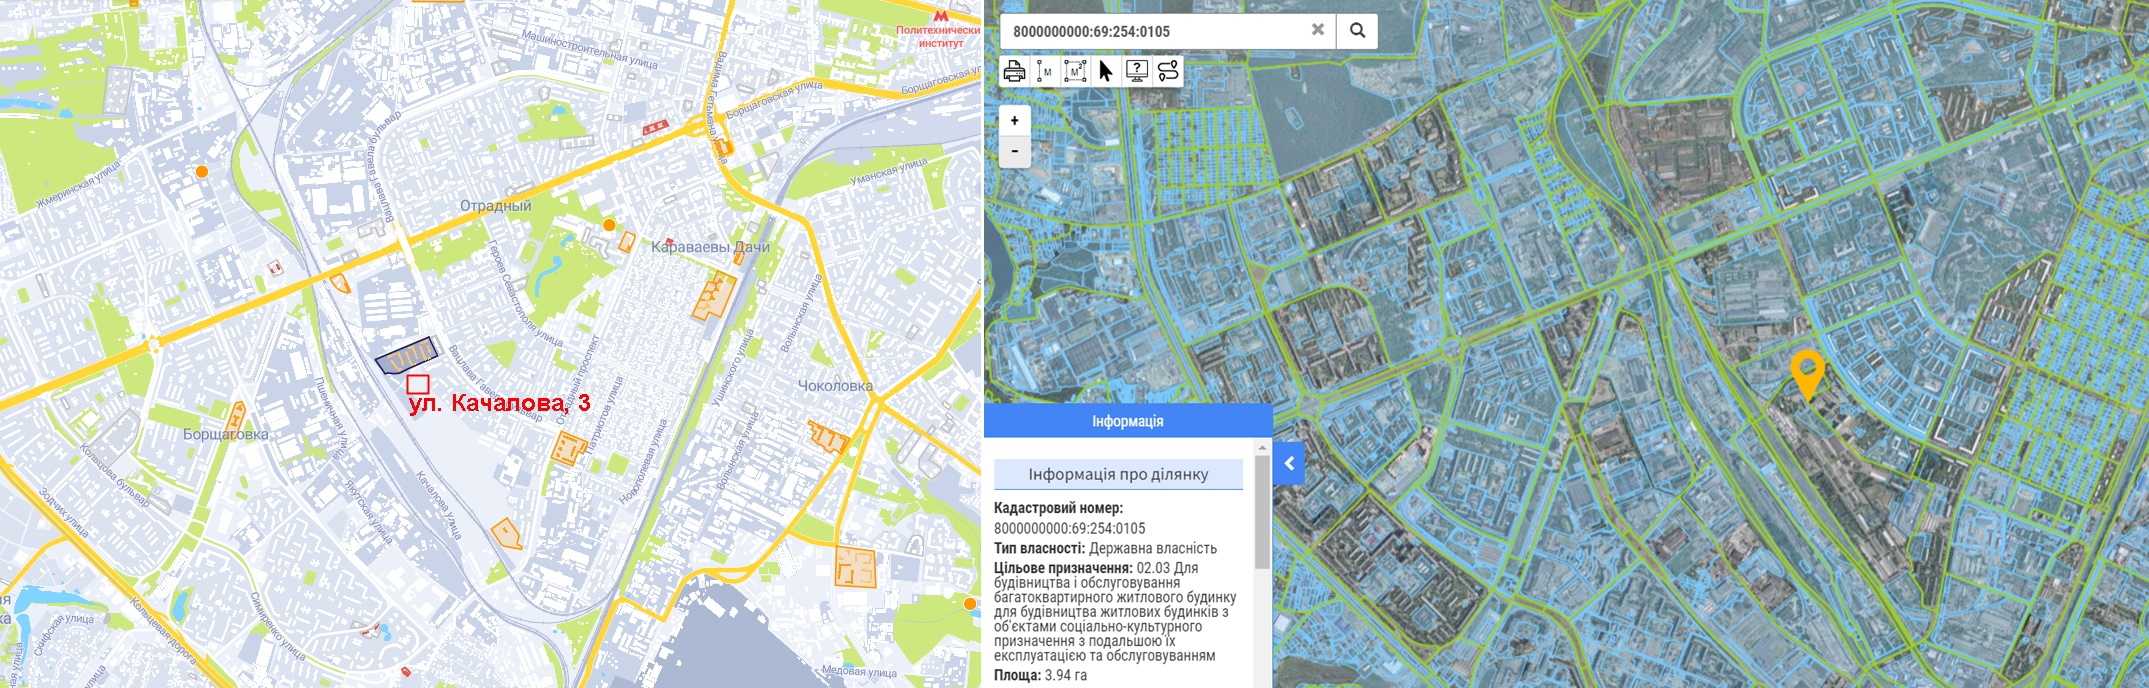 Проект ЖК по ул. Качалова, 3 на карте и данные кадастра